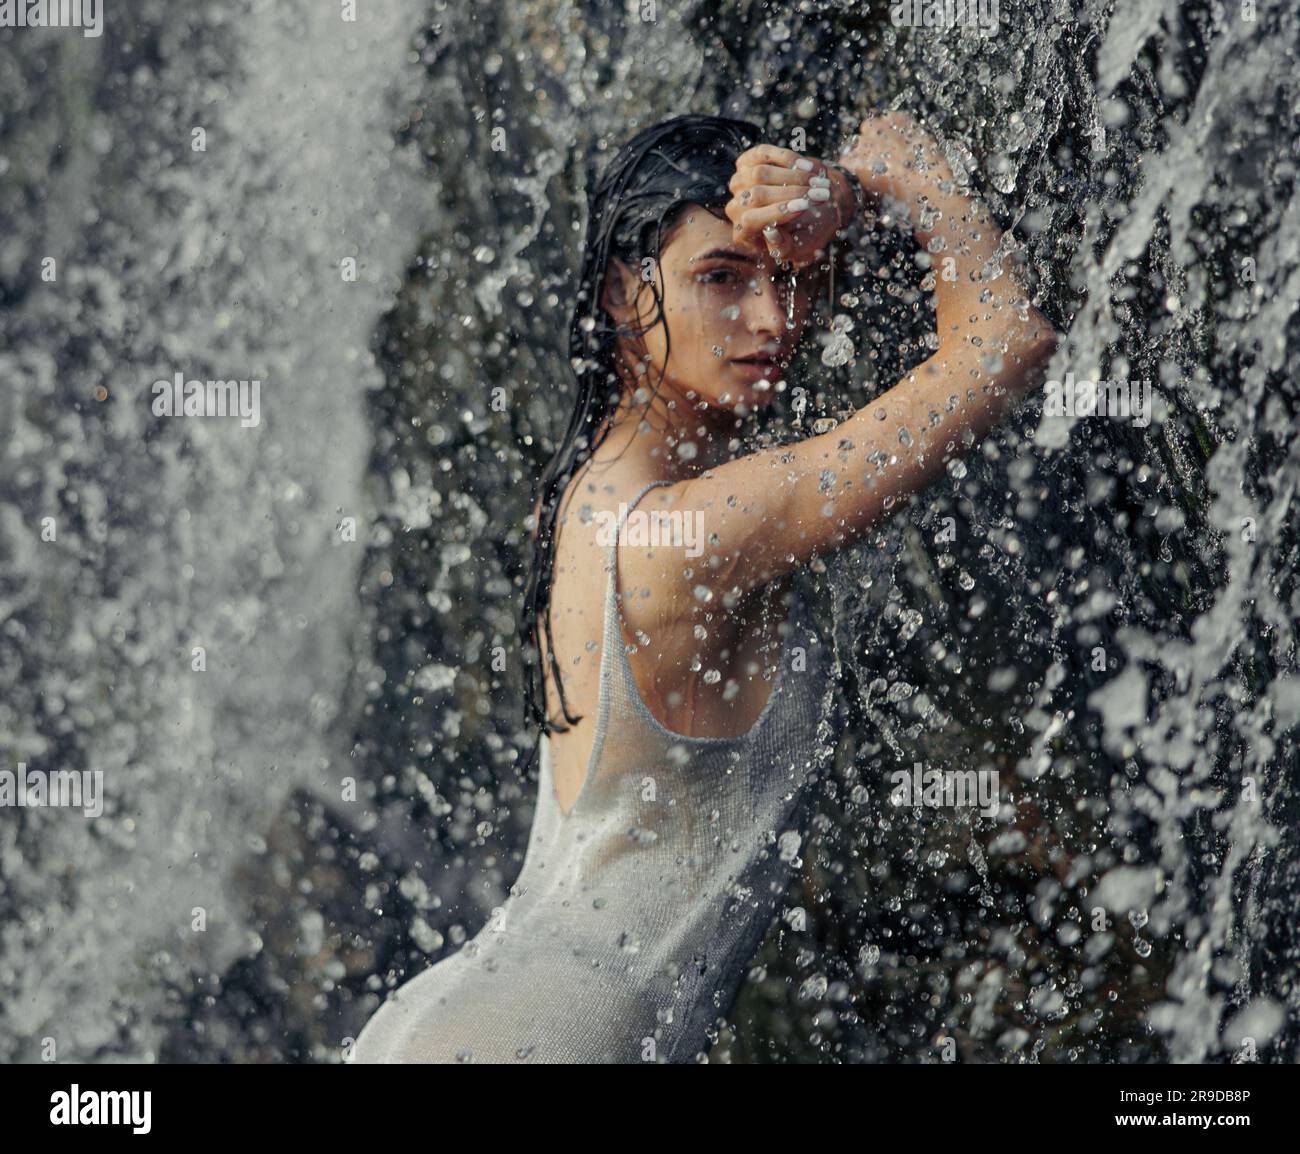 Porträt einer jungen Frau in nassem Kleid, die im Wasserfall zwischen Wasserströmen, Sprühnebel und Tropfen steht. Nahaufnahme. Stockfoto